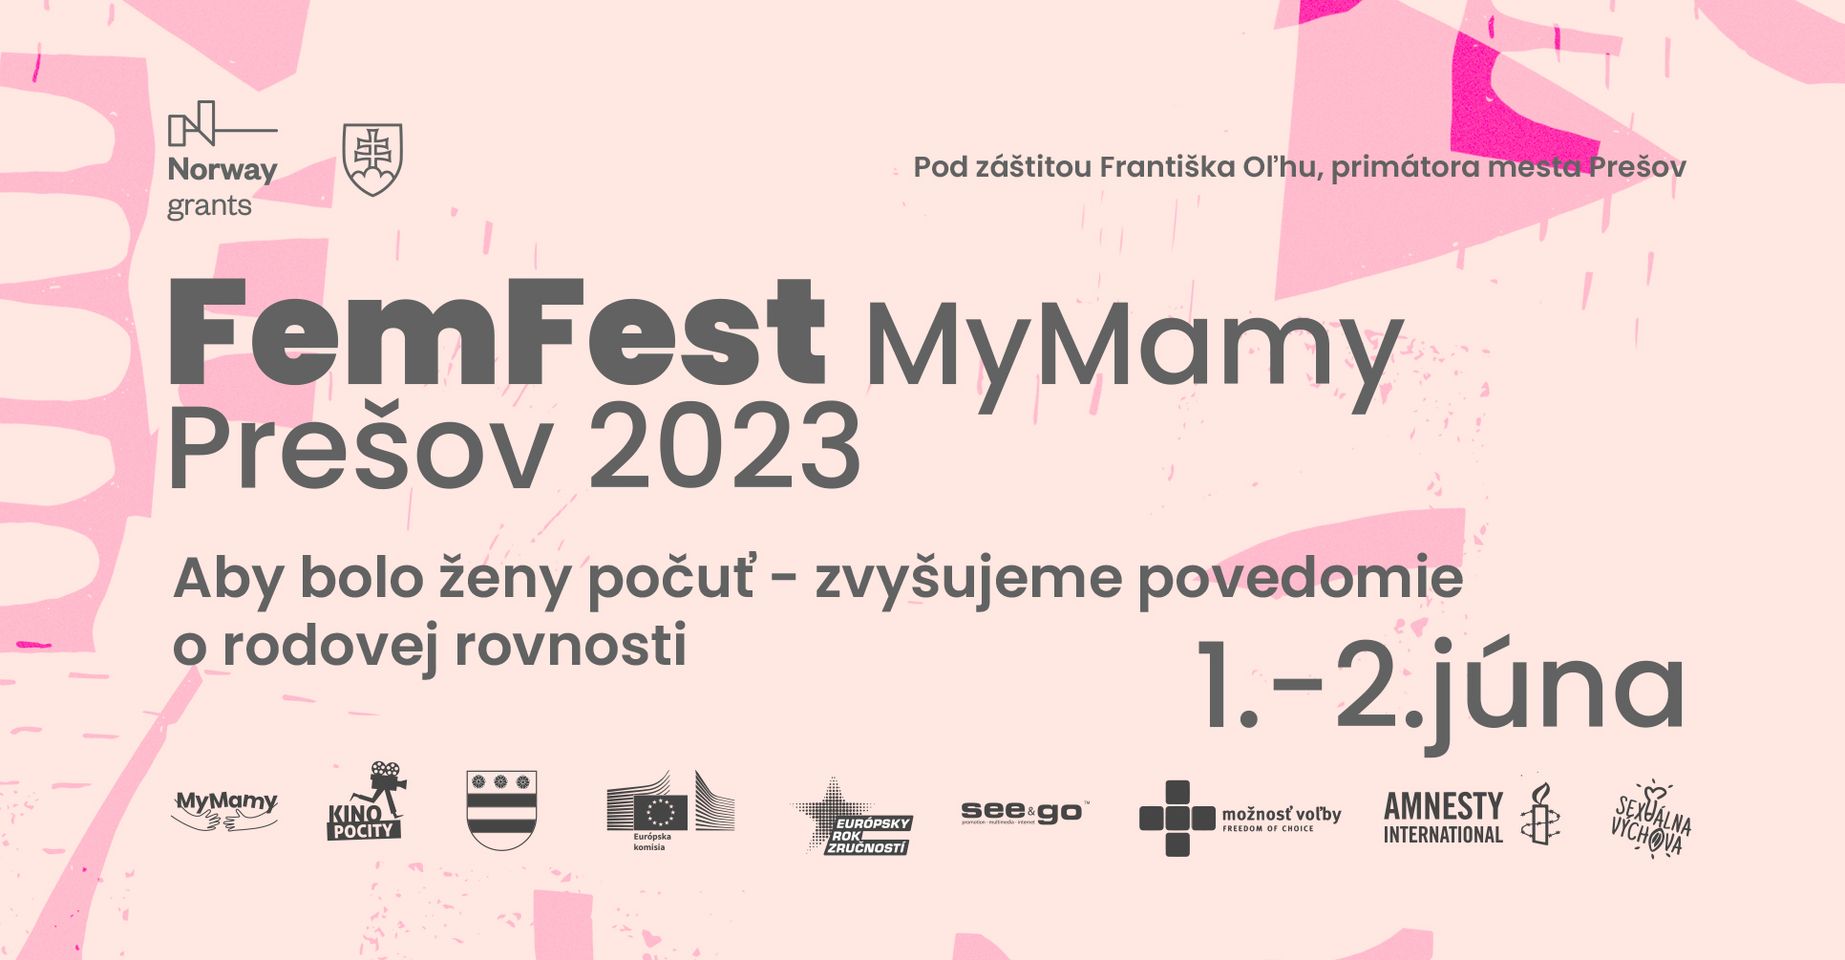 FemFest 2023 Prešov